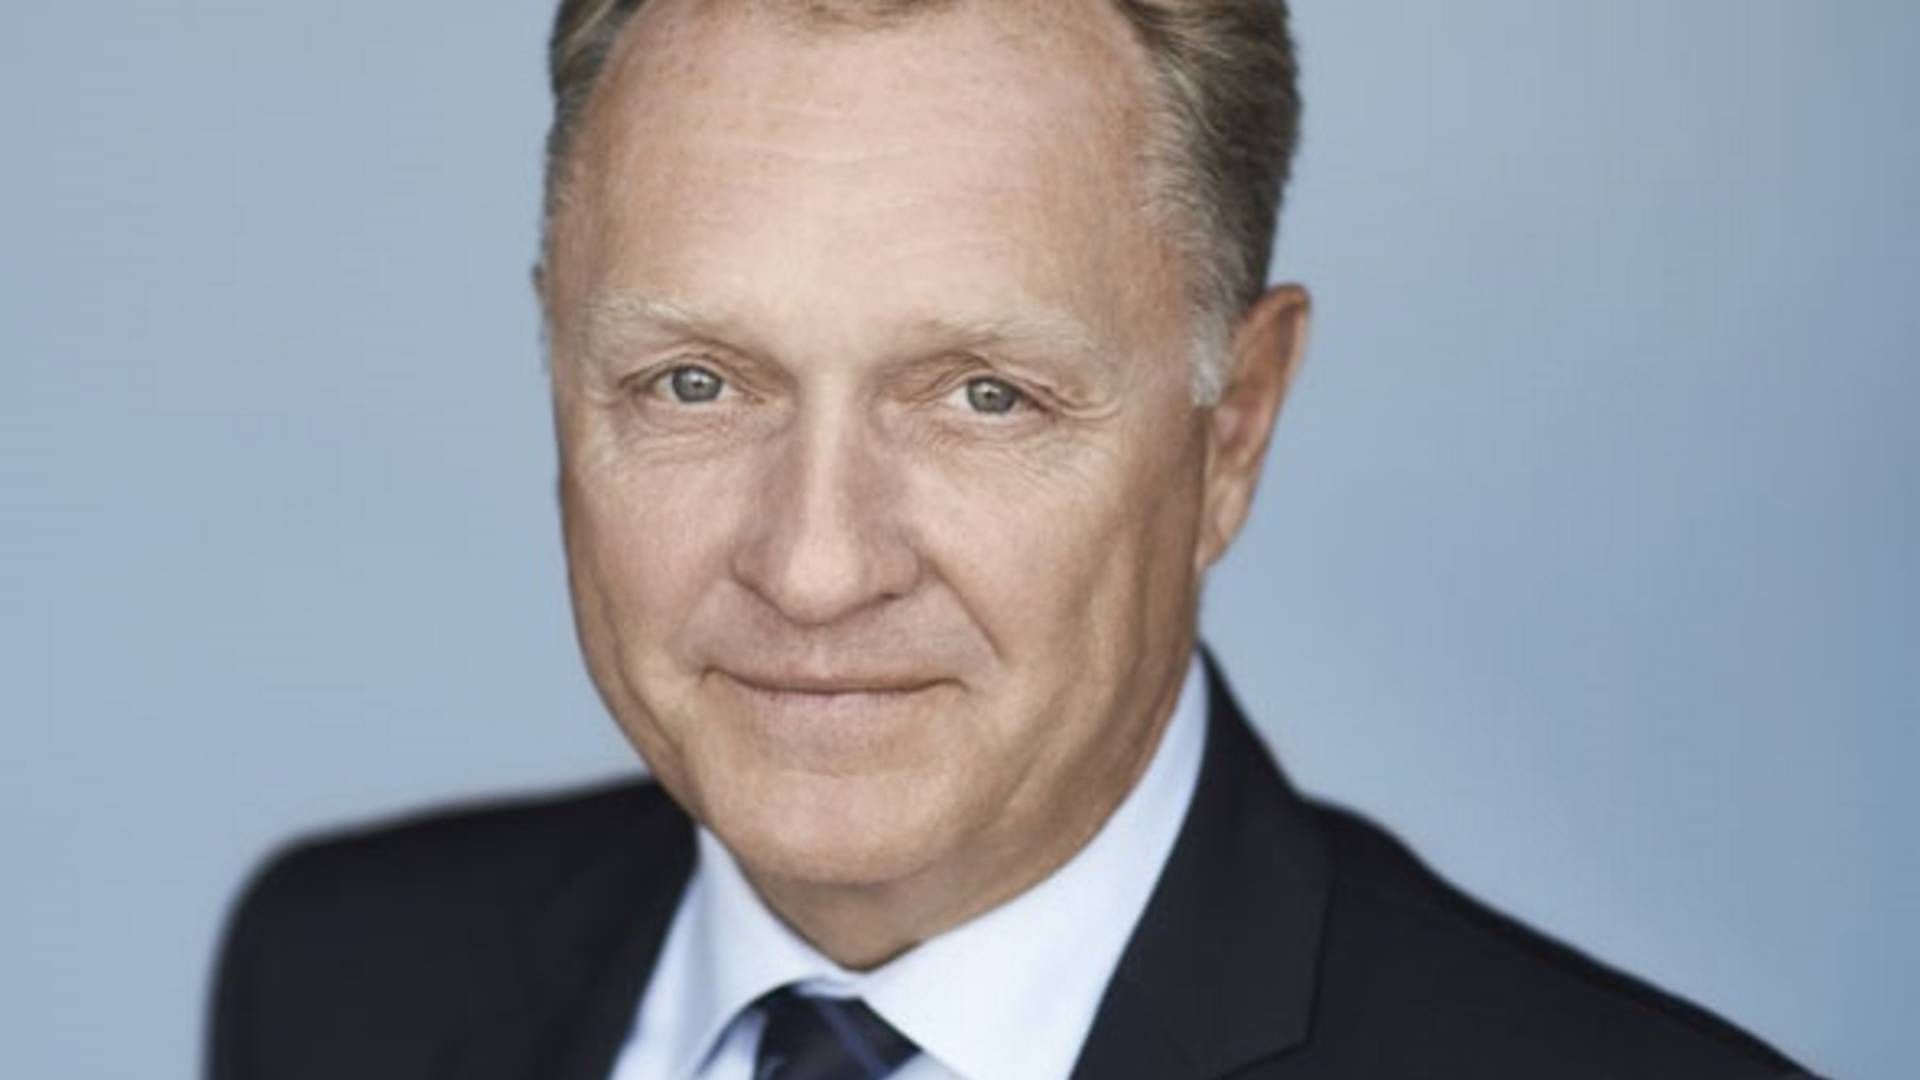 Carsten Dilling er bestyrelsesformand for MT Højgaard, som ifølge sine tidligere udmeldte forventninger, regner med at lande en omsætning på omkring 7,1 mia. kroner i 2021. Formanden mener, at MT Højgaard er klar til at gå efter endnu mere vækst med ny topchef ombord. | Foto: PR